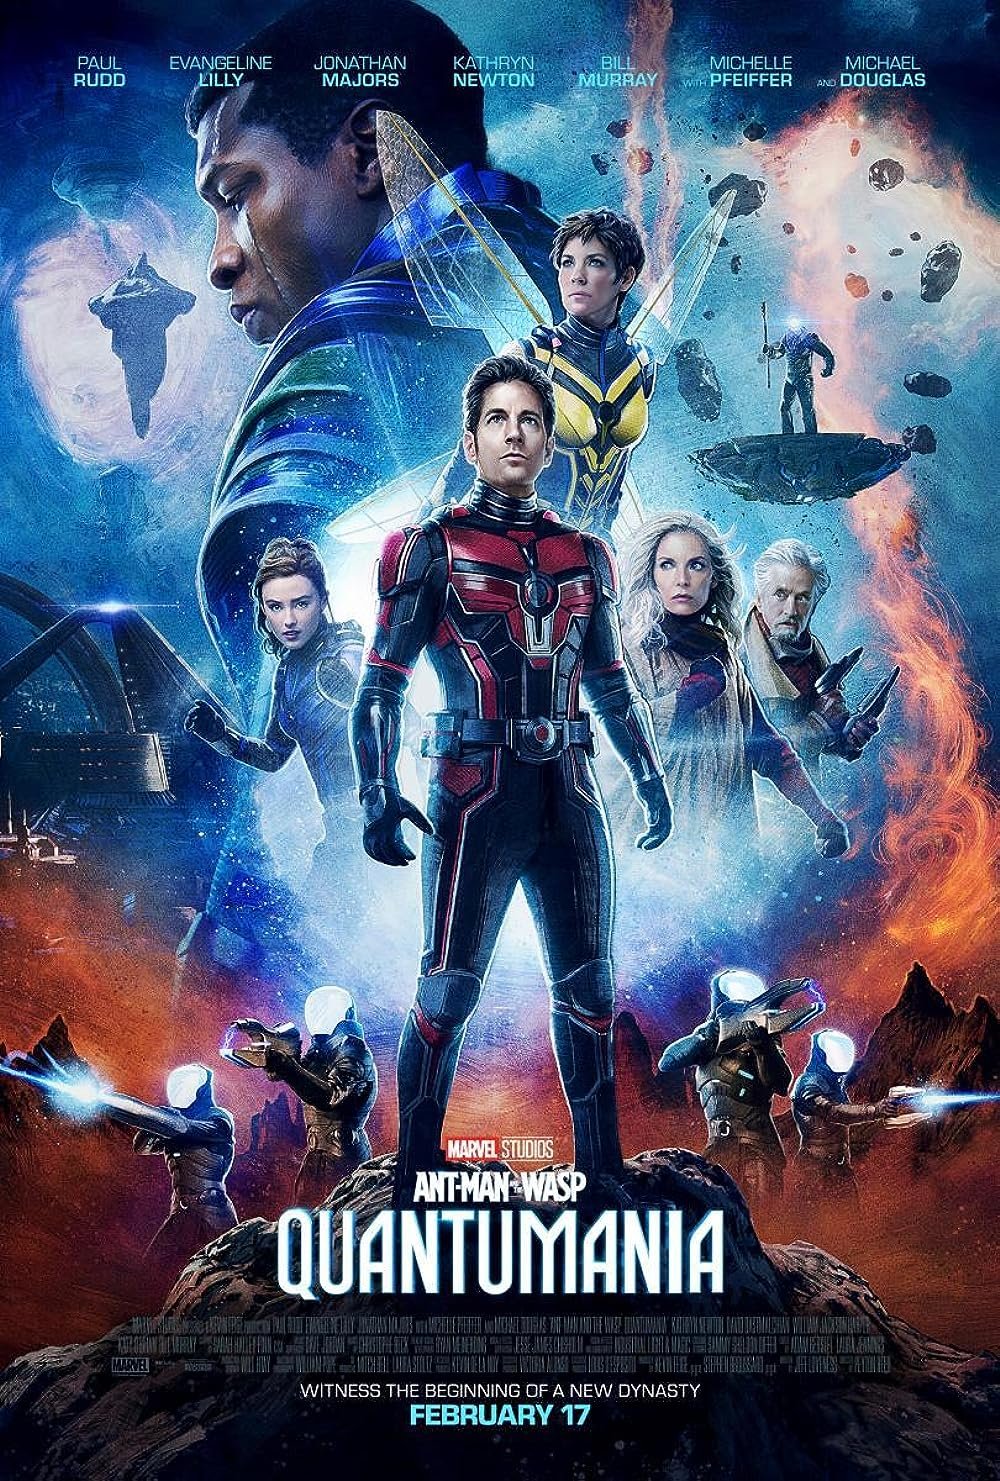 ენთმენი და კრაზანა კუანტუმანია/Ant-Man and the Wasp: Quantumania